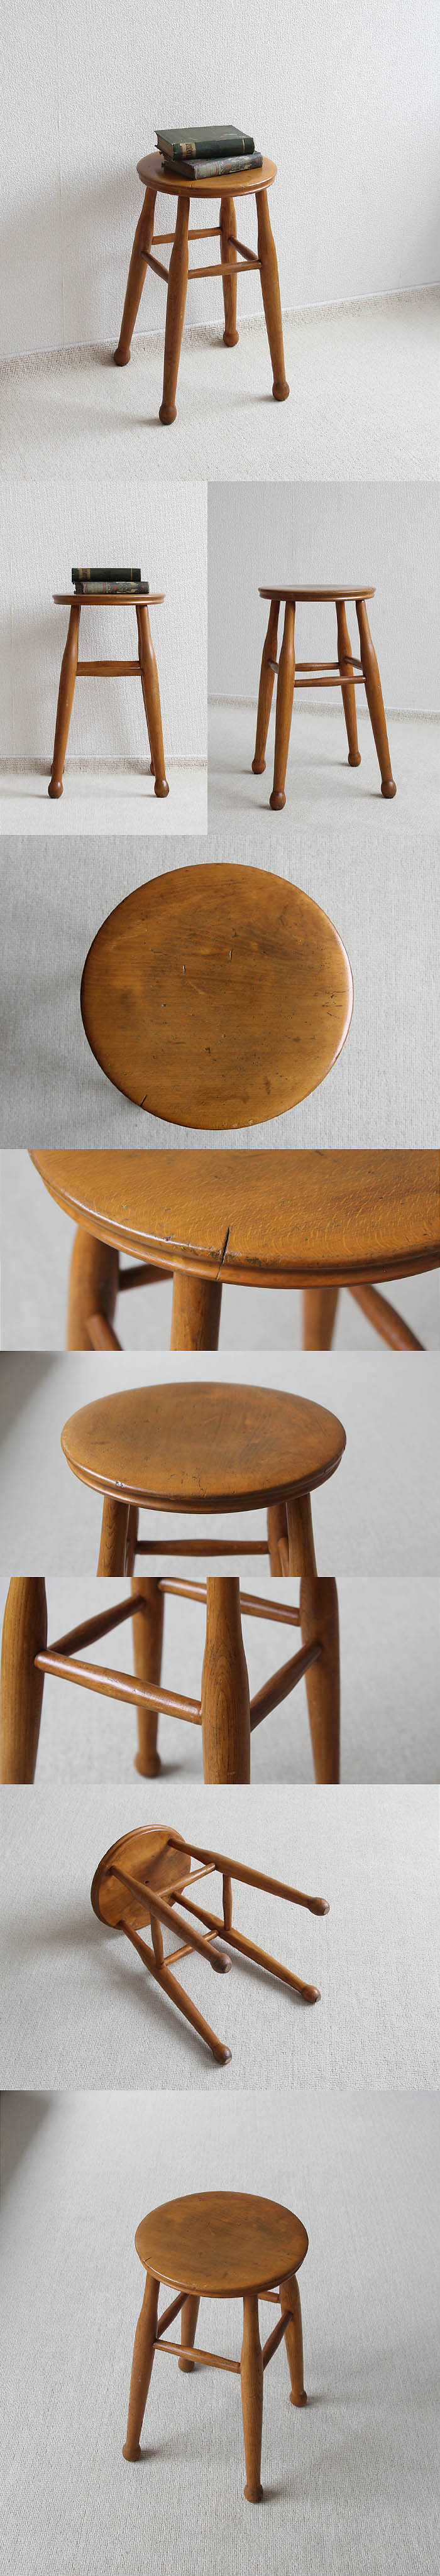 イギリス アンティーク スツール 木製 丸椅子 飾り台 カントリー 無垢材 家具 V-260